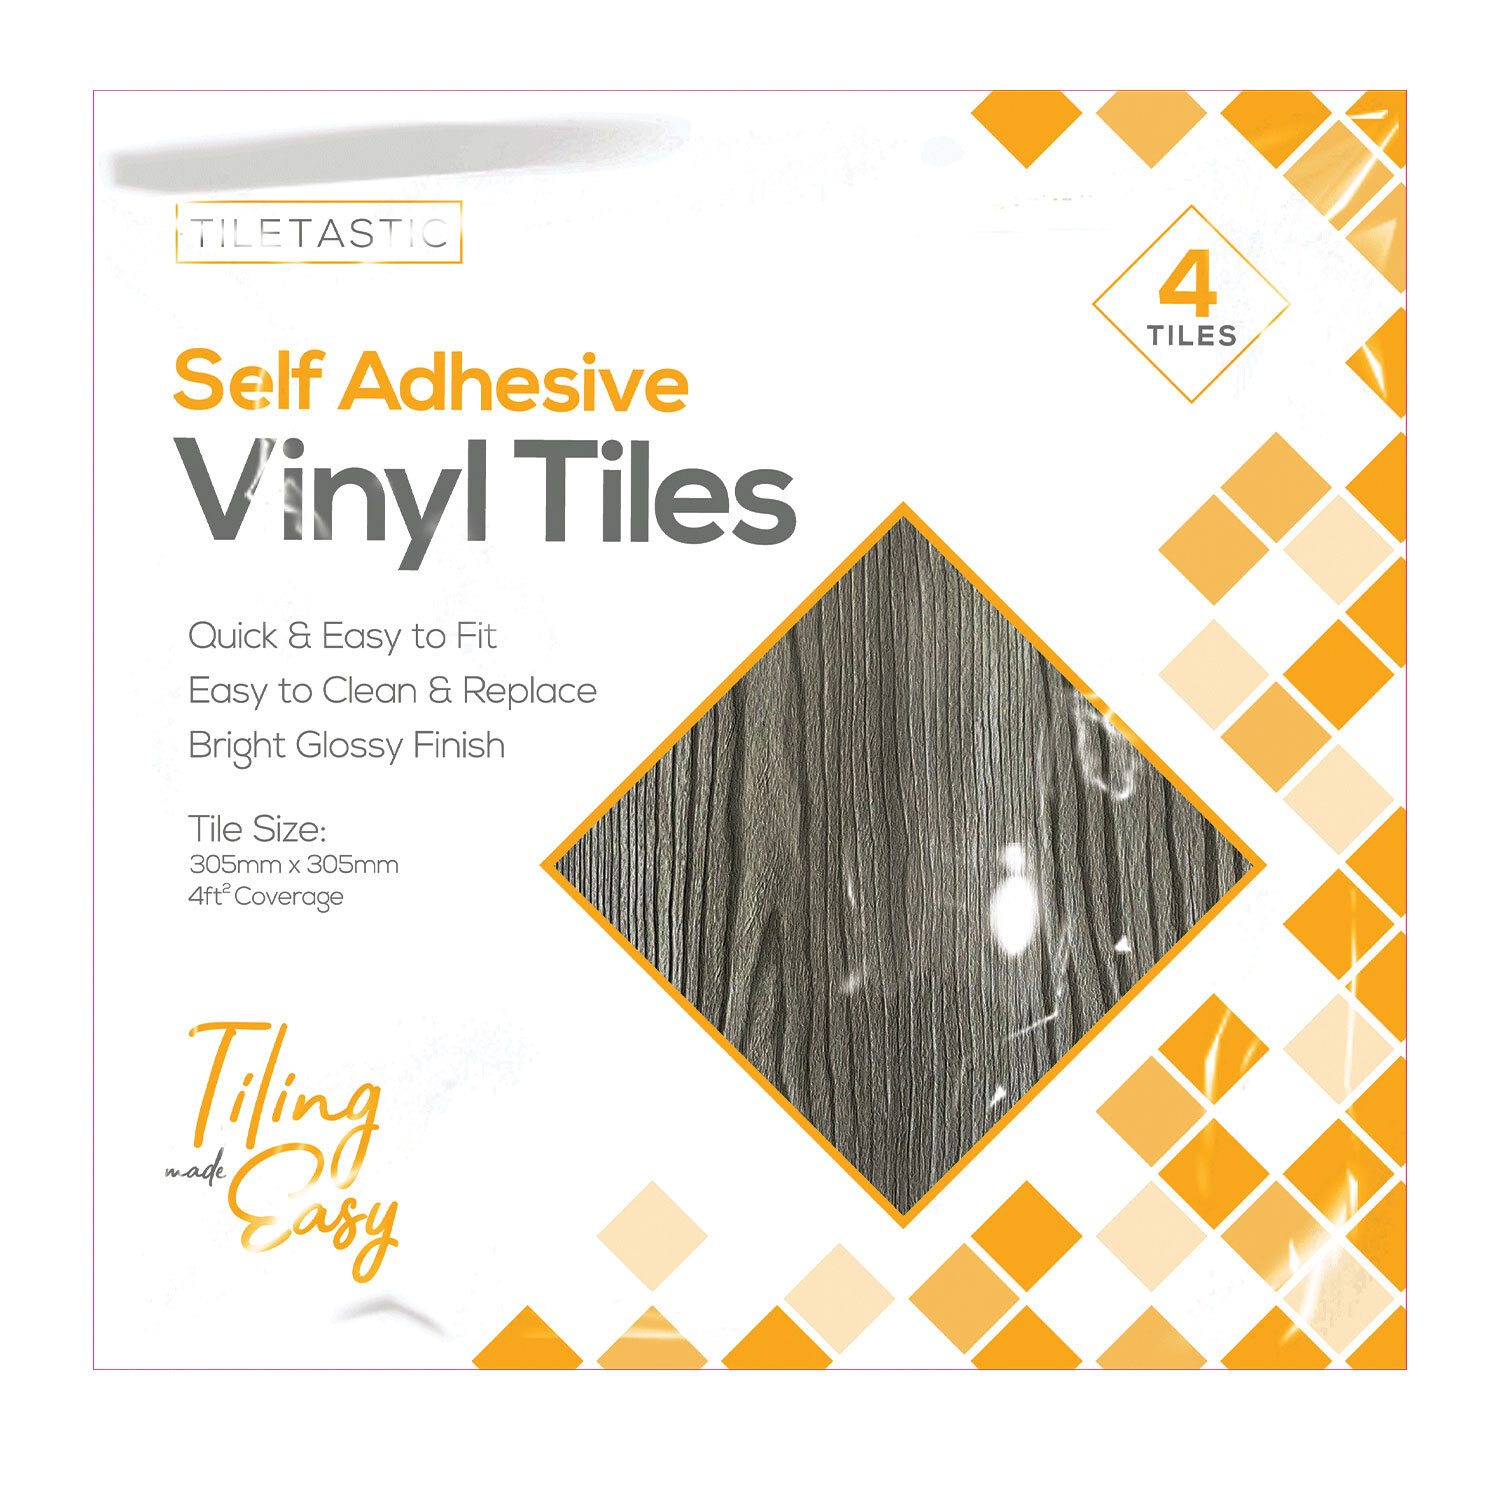 Tiletastic Self Adhesive Vinyl Floor Tile 4 Pack Image